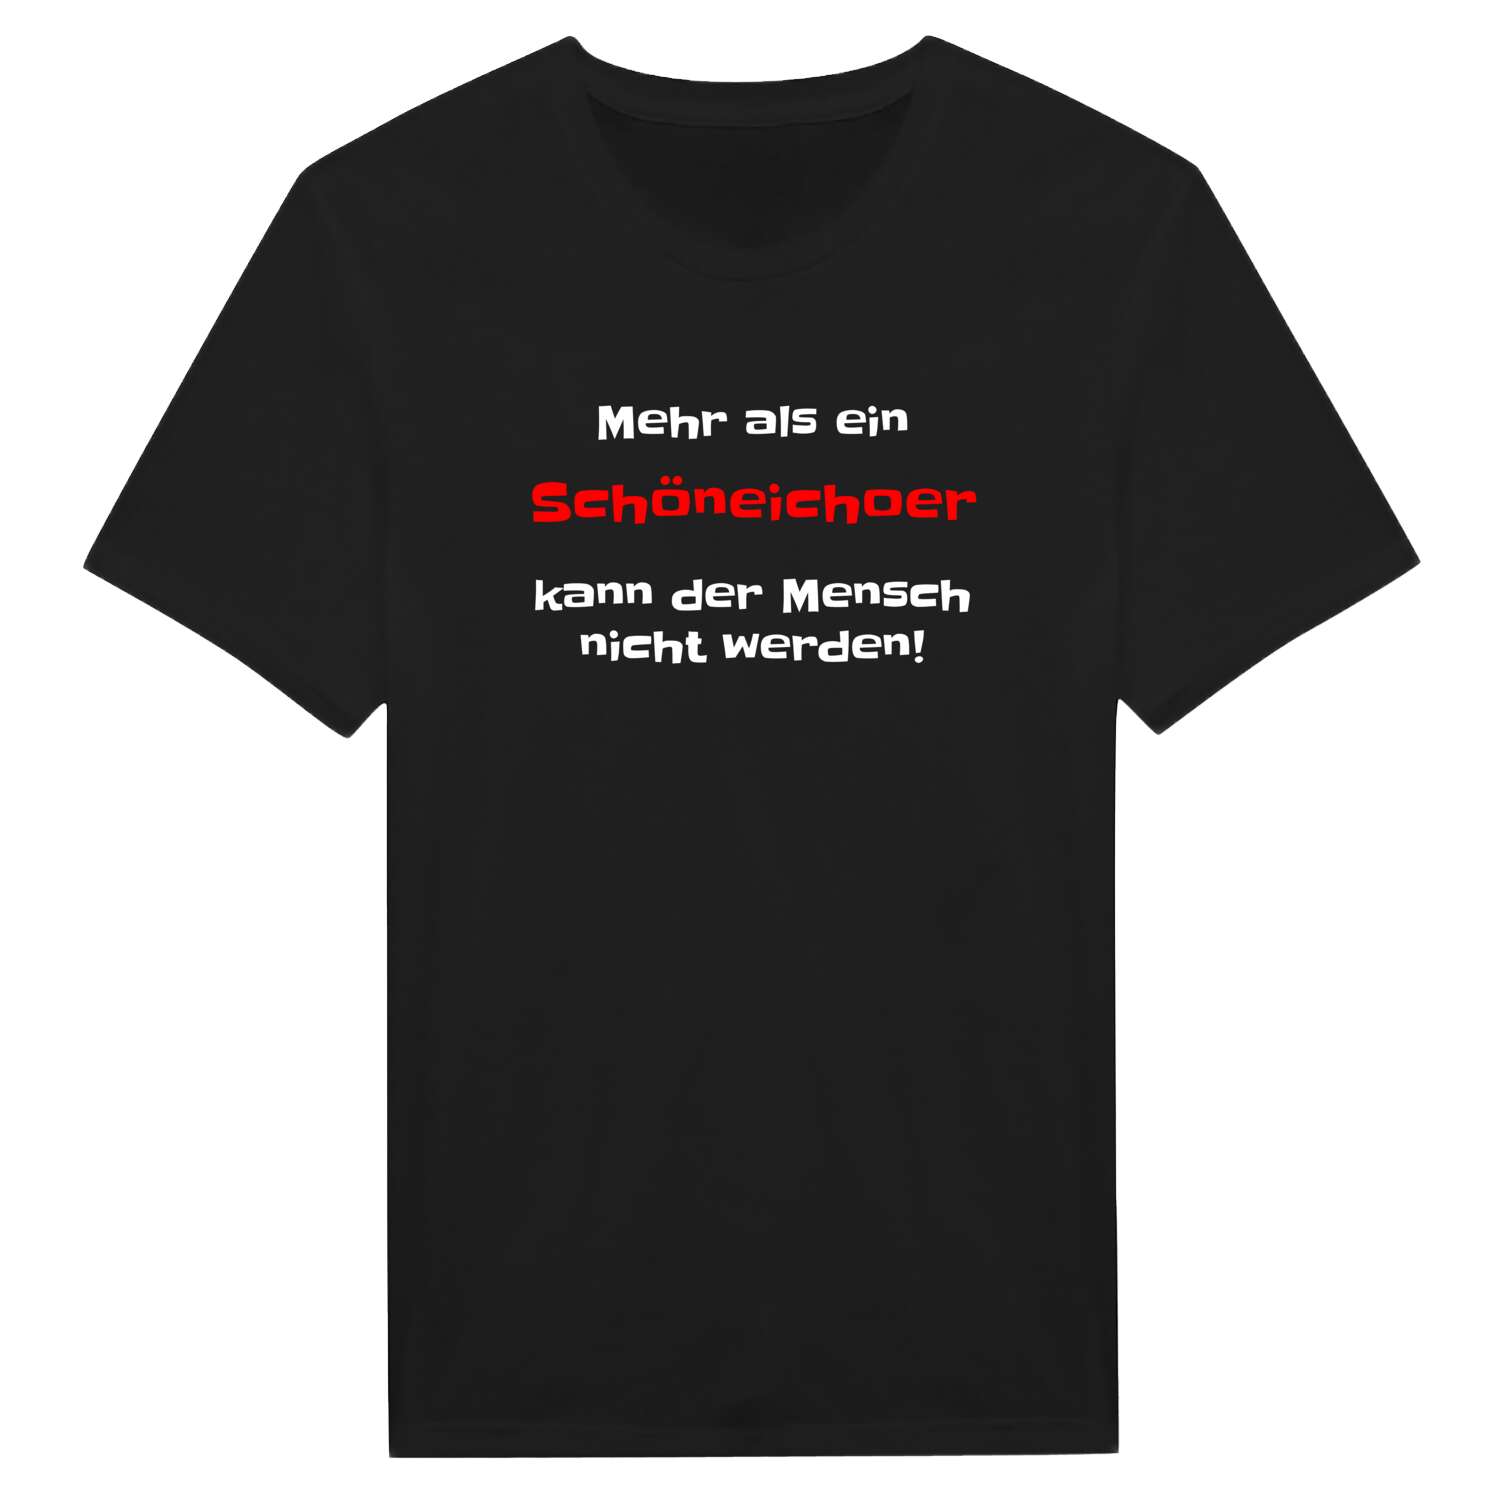 Schöneicho T-Shirt »Mehr als ein«